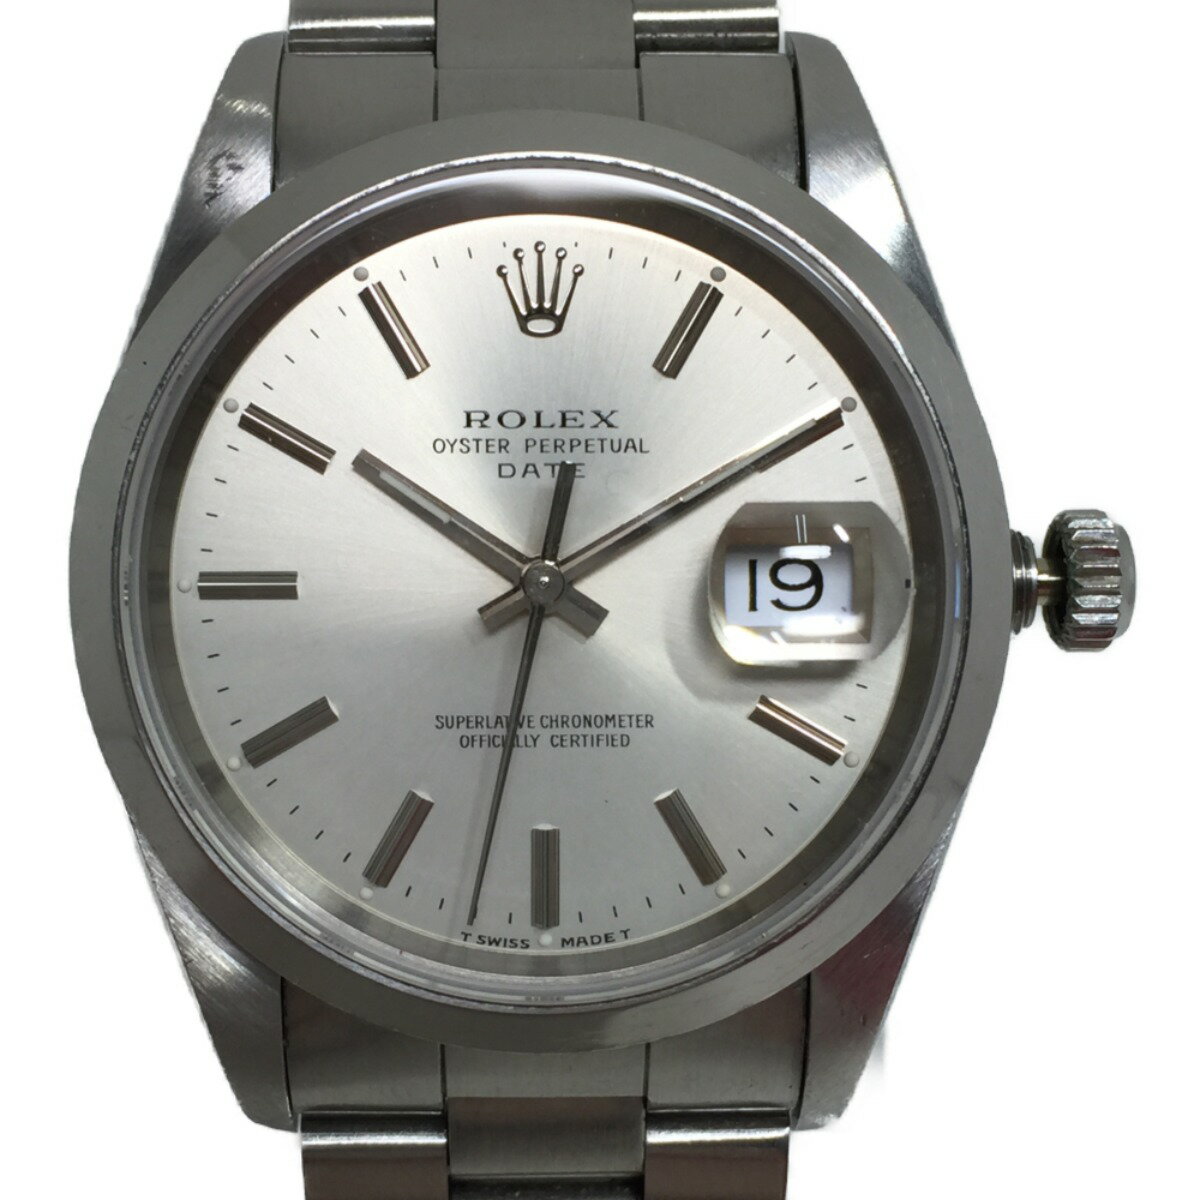 ◎◎【中古】ROLEX ロレックス オイスターパーペチュアルデイト Ref.15200 S番 自動巻 腕時計 Cランク